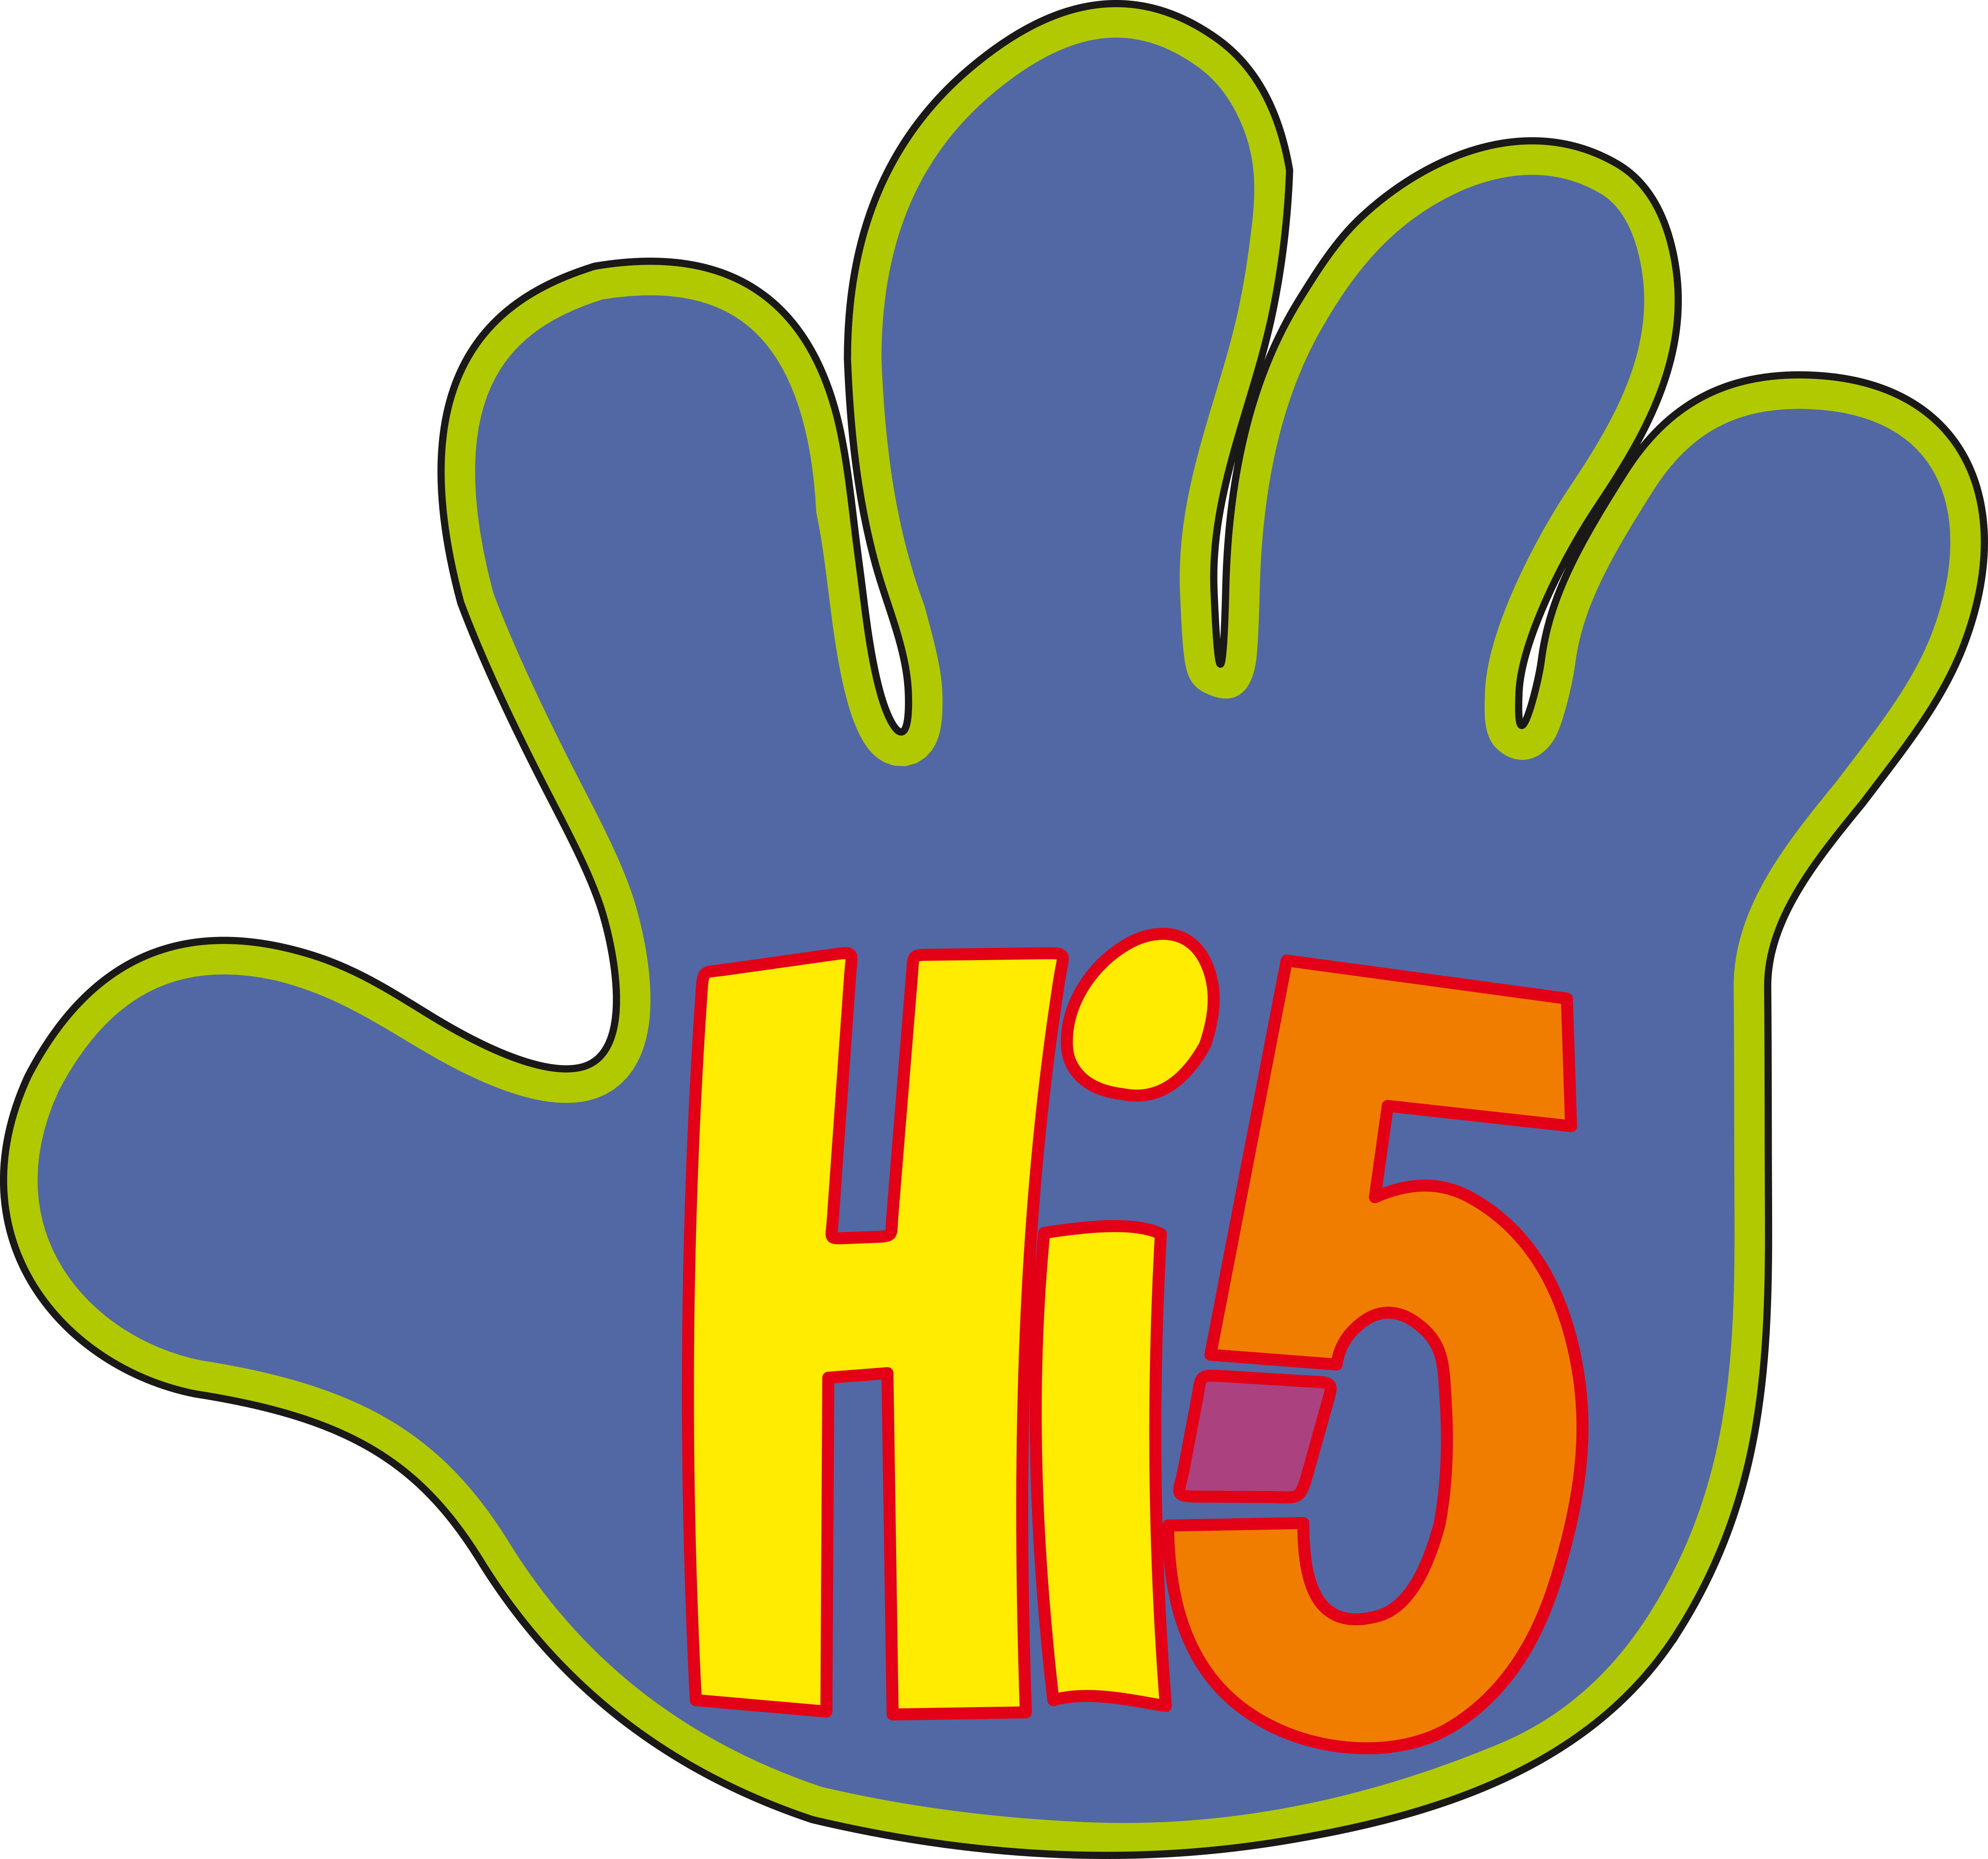 Www hi5 com sign in